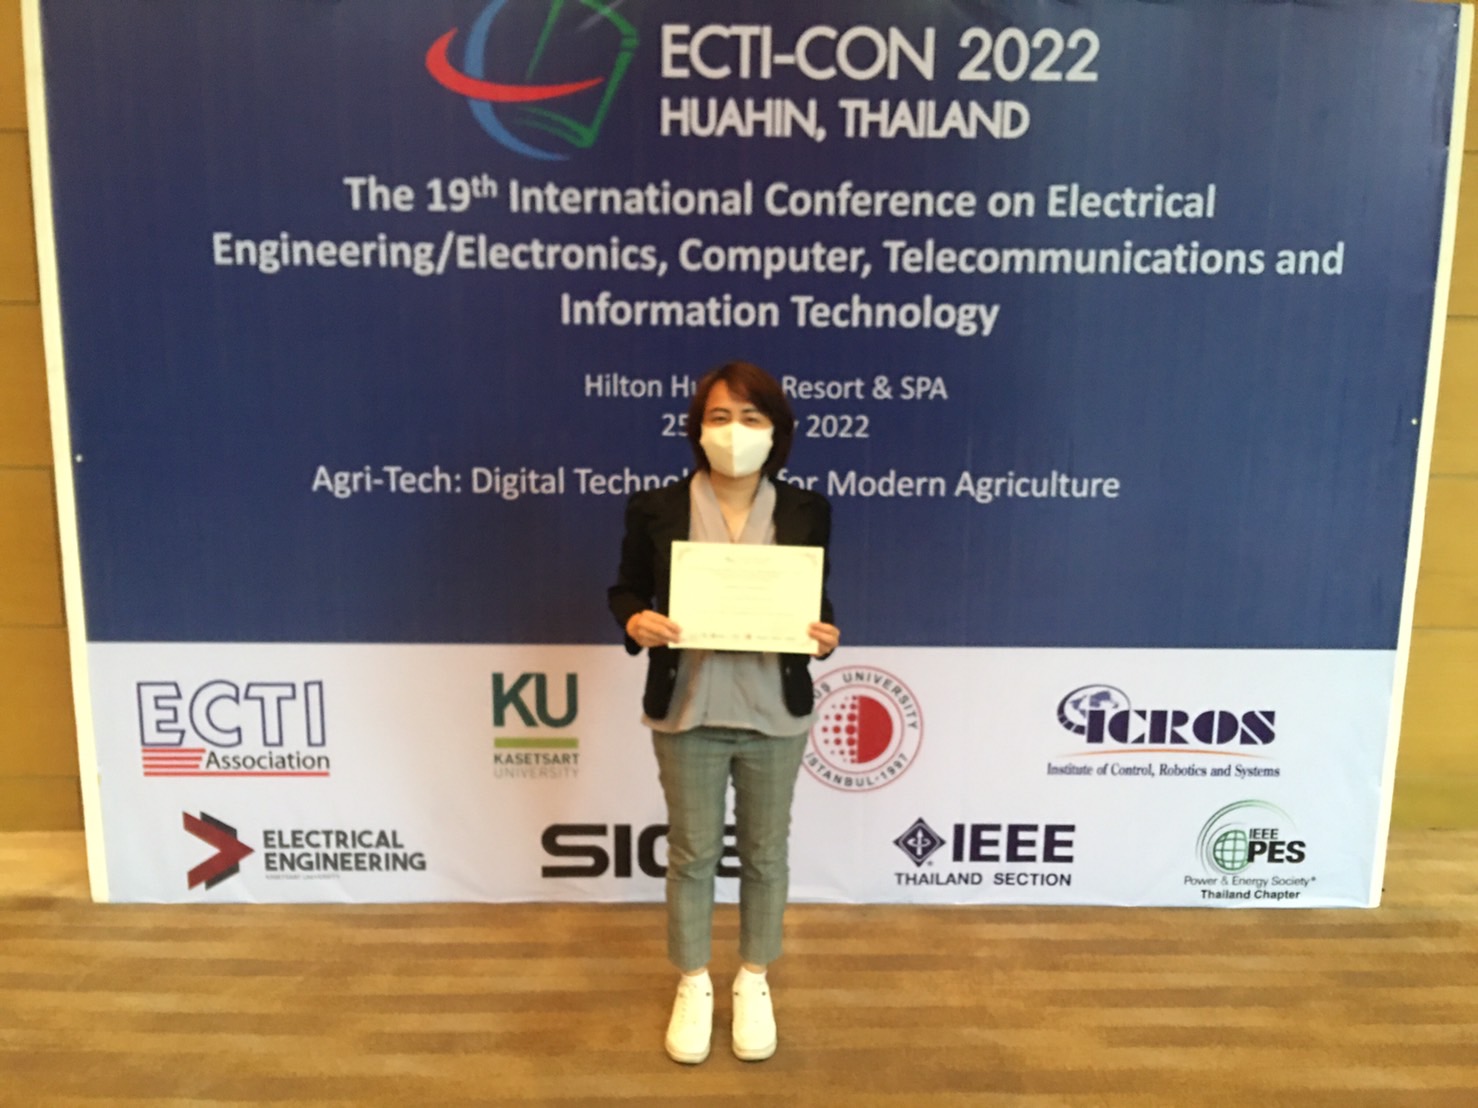 นิสิตหลักสูตรวิศวกรรมศาสตรดุษฏีบัณฑิต ได้รับรางวัล Best Paper Award งานประชุมวิชาการ ECTI-CON 2022